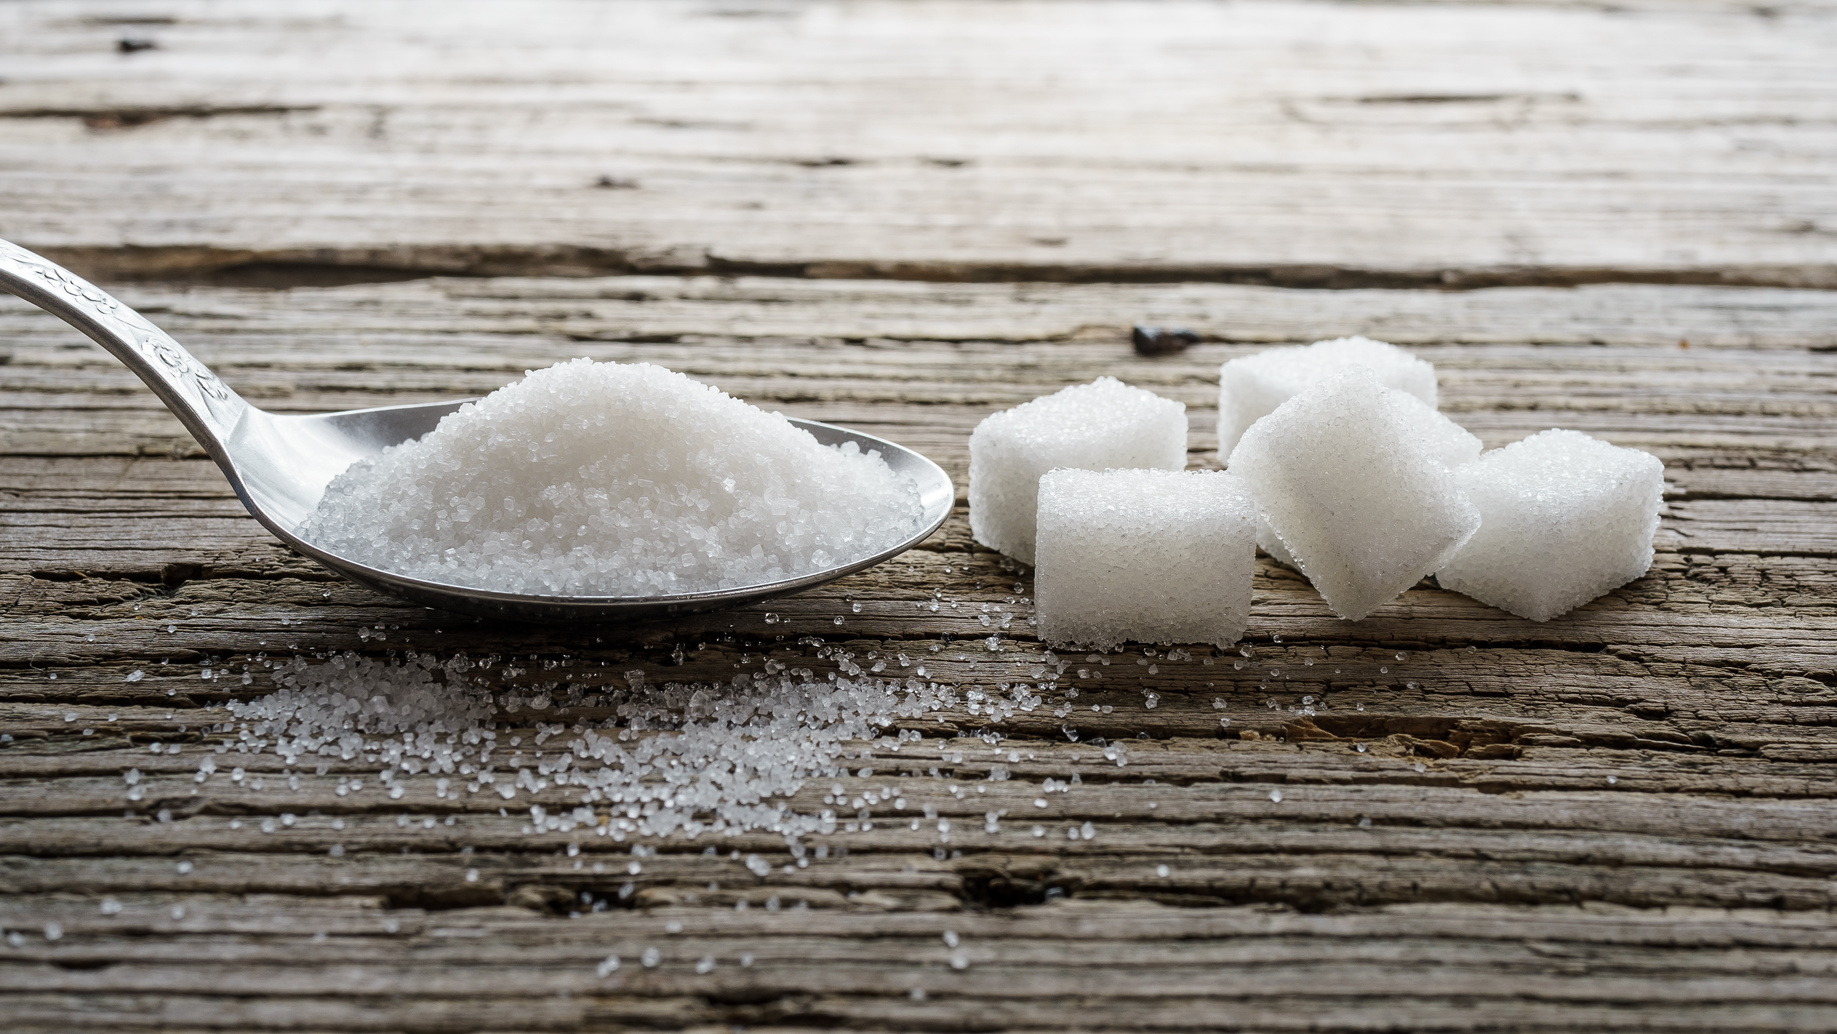 Sostituire lo zucchero da cucina, le alternative più sane